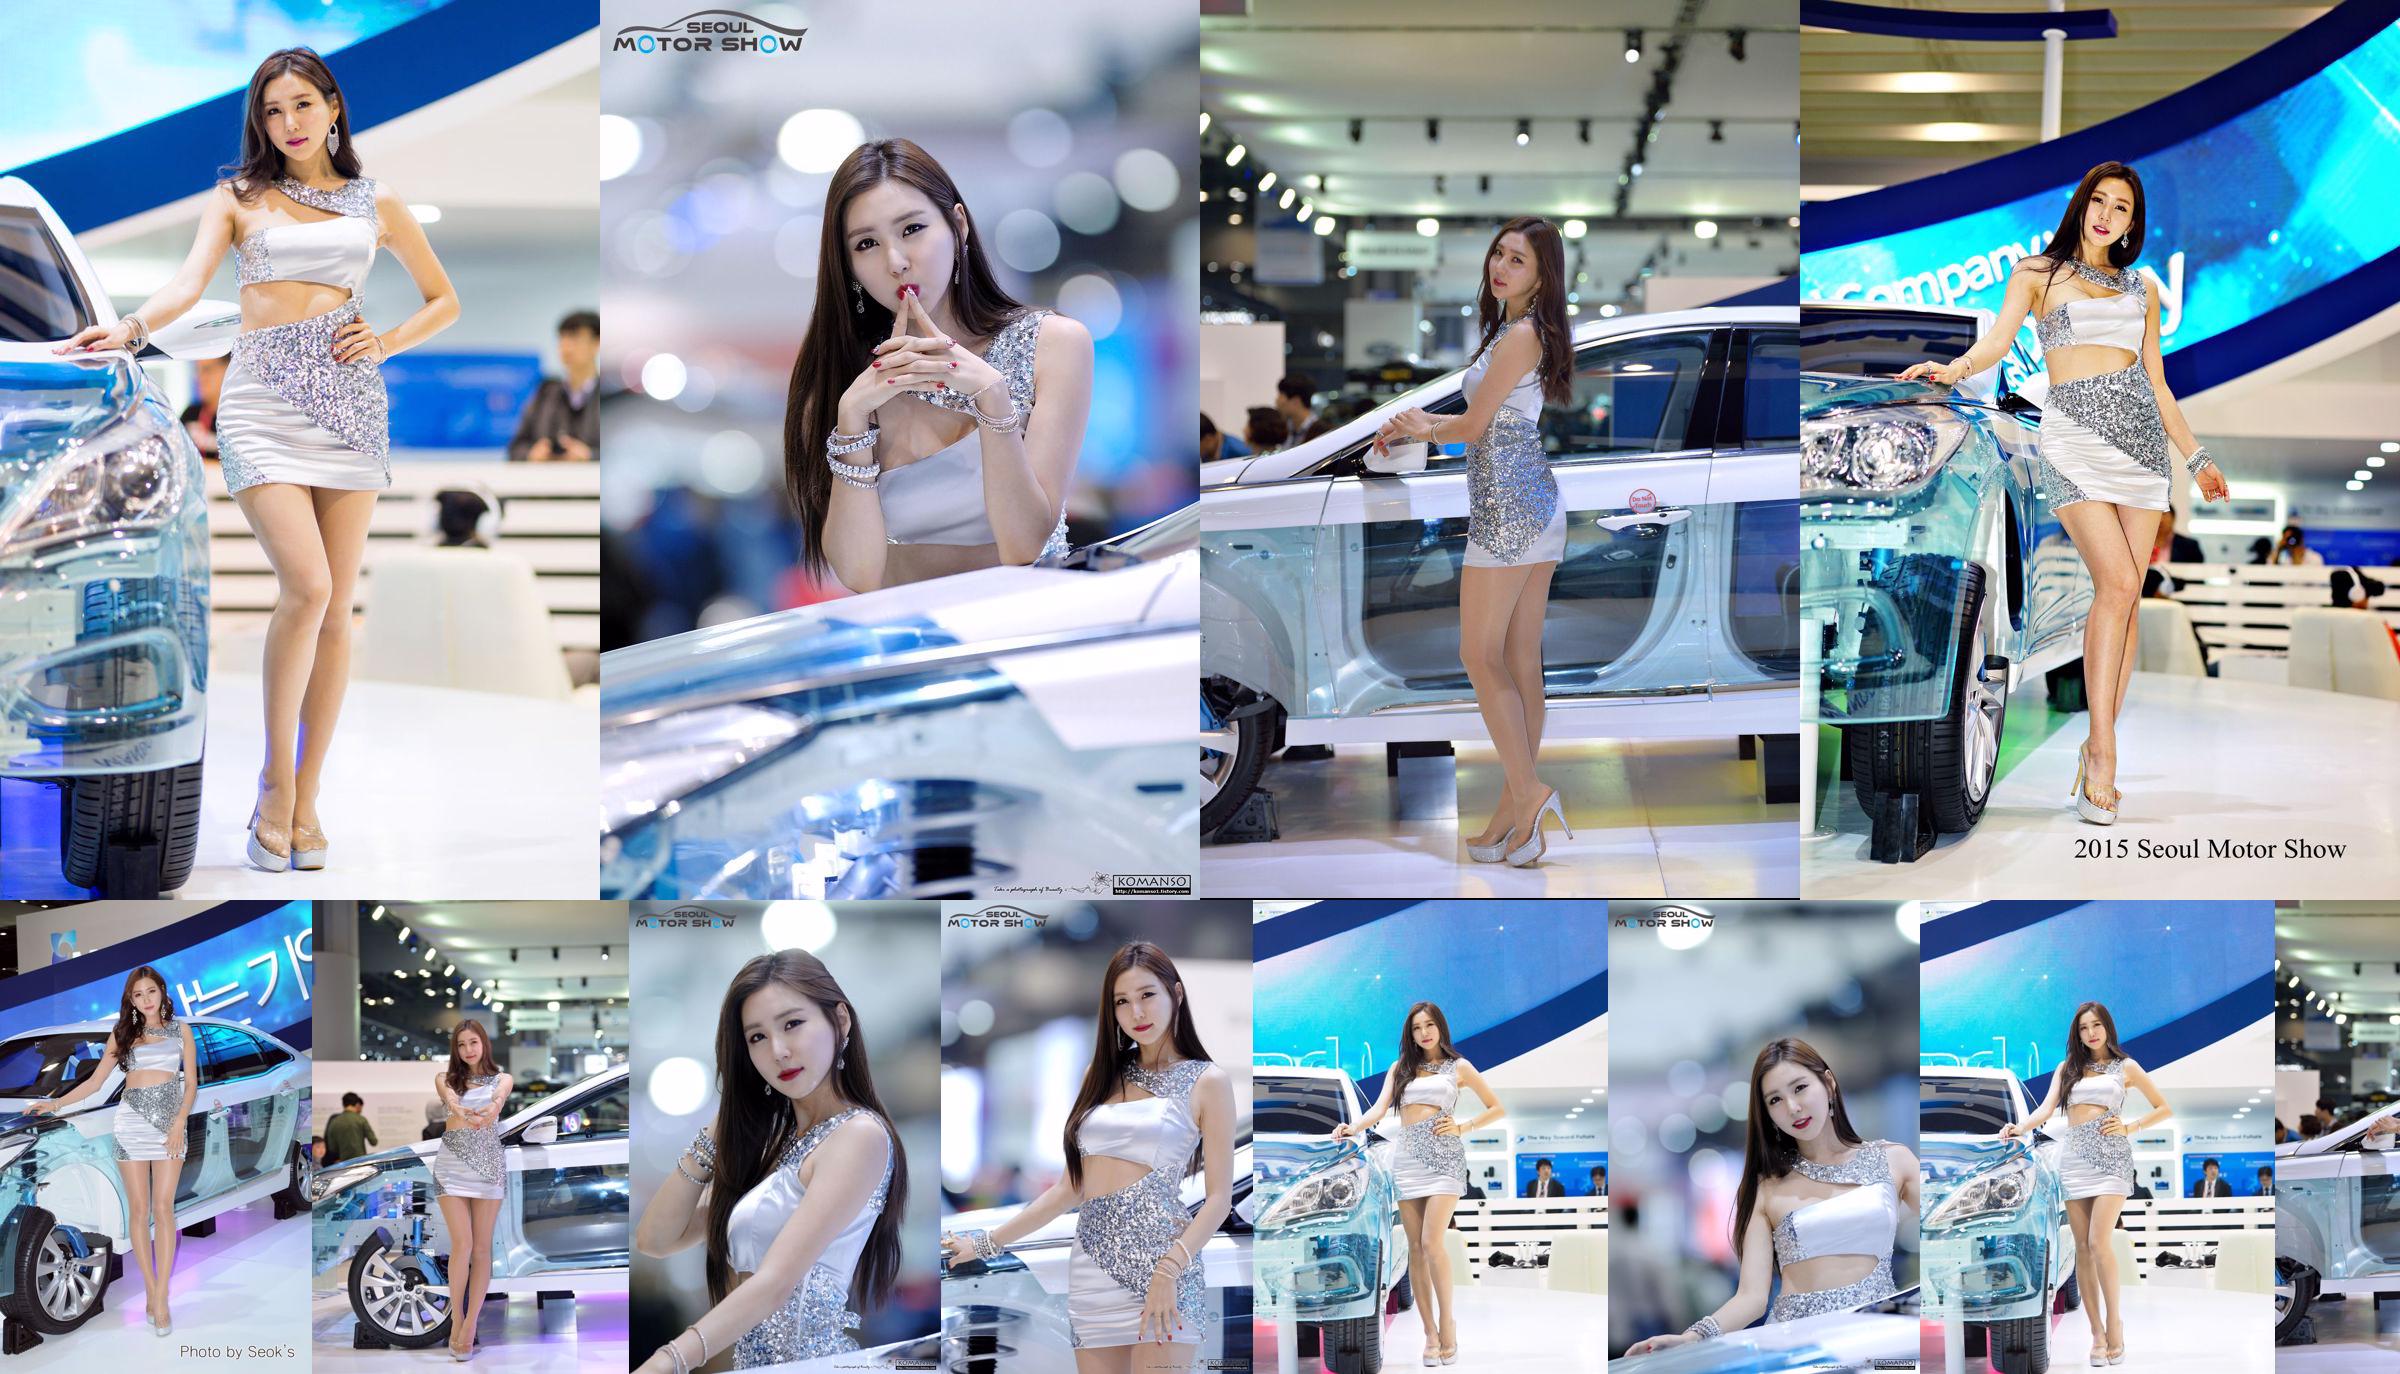 Modelo de coche coreano Choi Yujin-Auto Show Colección de imágenes No.c943b0 Página 1